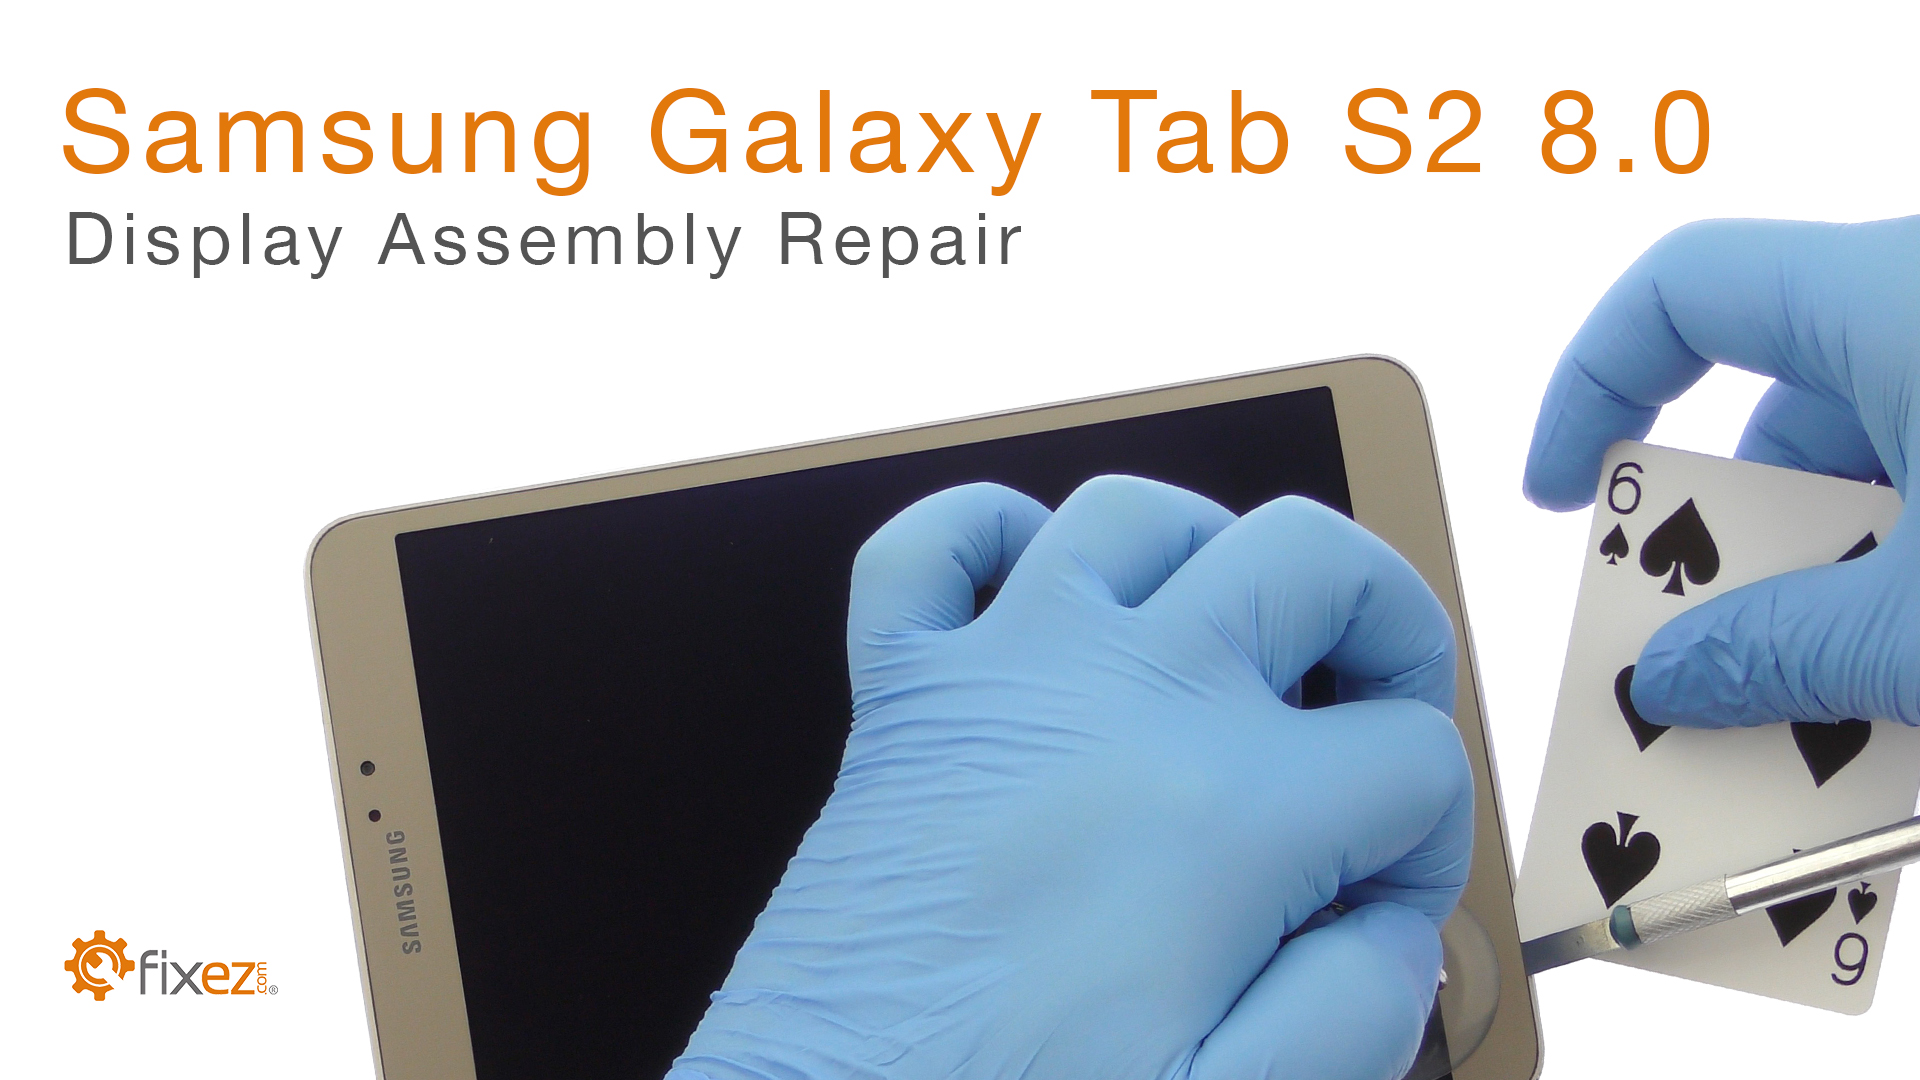 Samsung Galaxy Tab S2 8.0 Display Assembly Repair